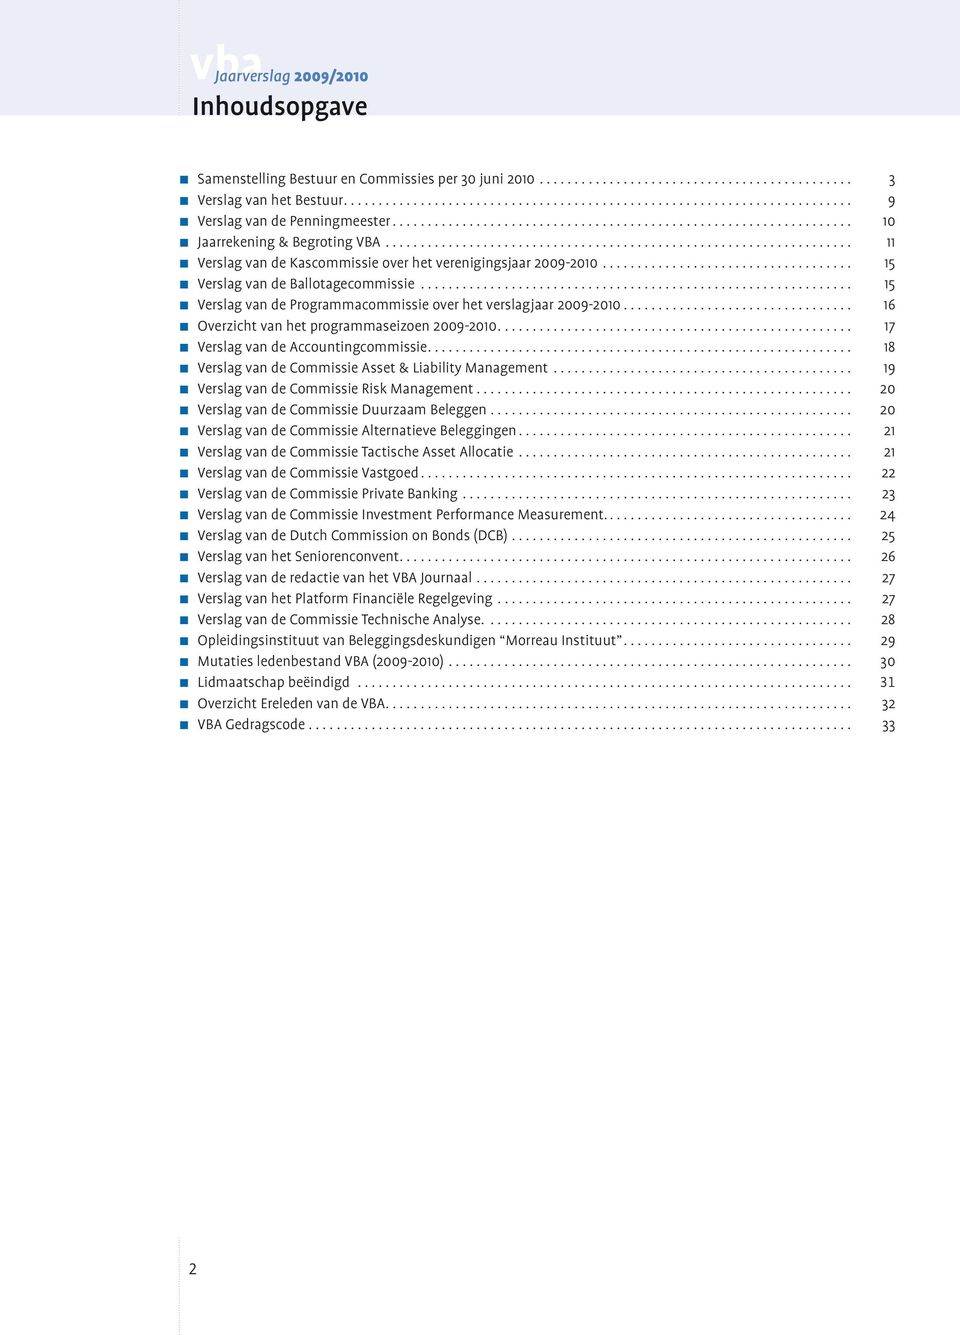 .. 16 Overzicht van het programmaseizoen 2009-2010... 17 Verslag van de Accountingcommissie... 18 Verslag van de Commissie Asset & Liability Management... 19 Verslag van de Commissie Risk Management.